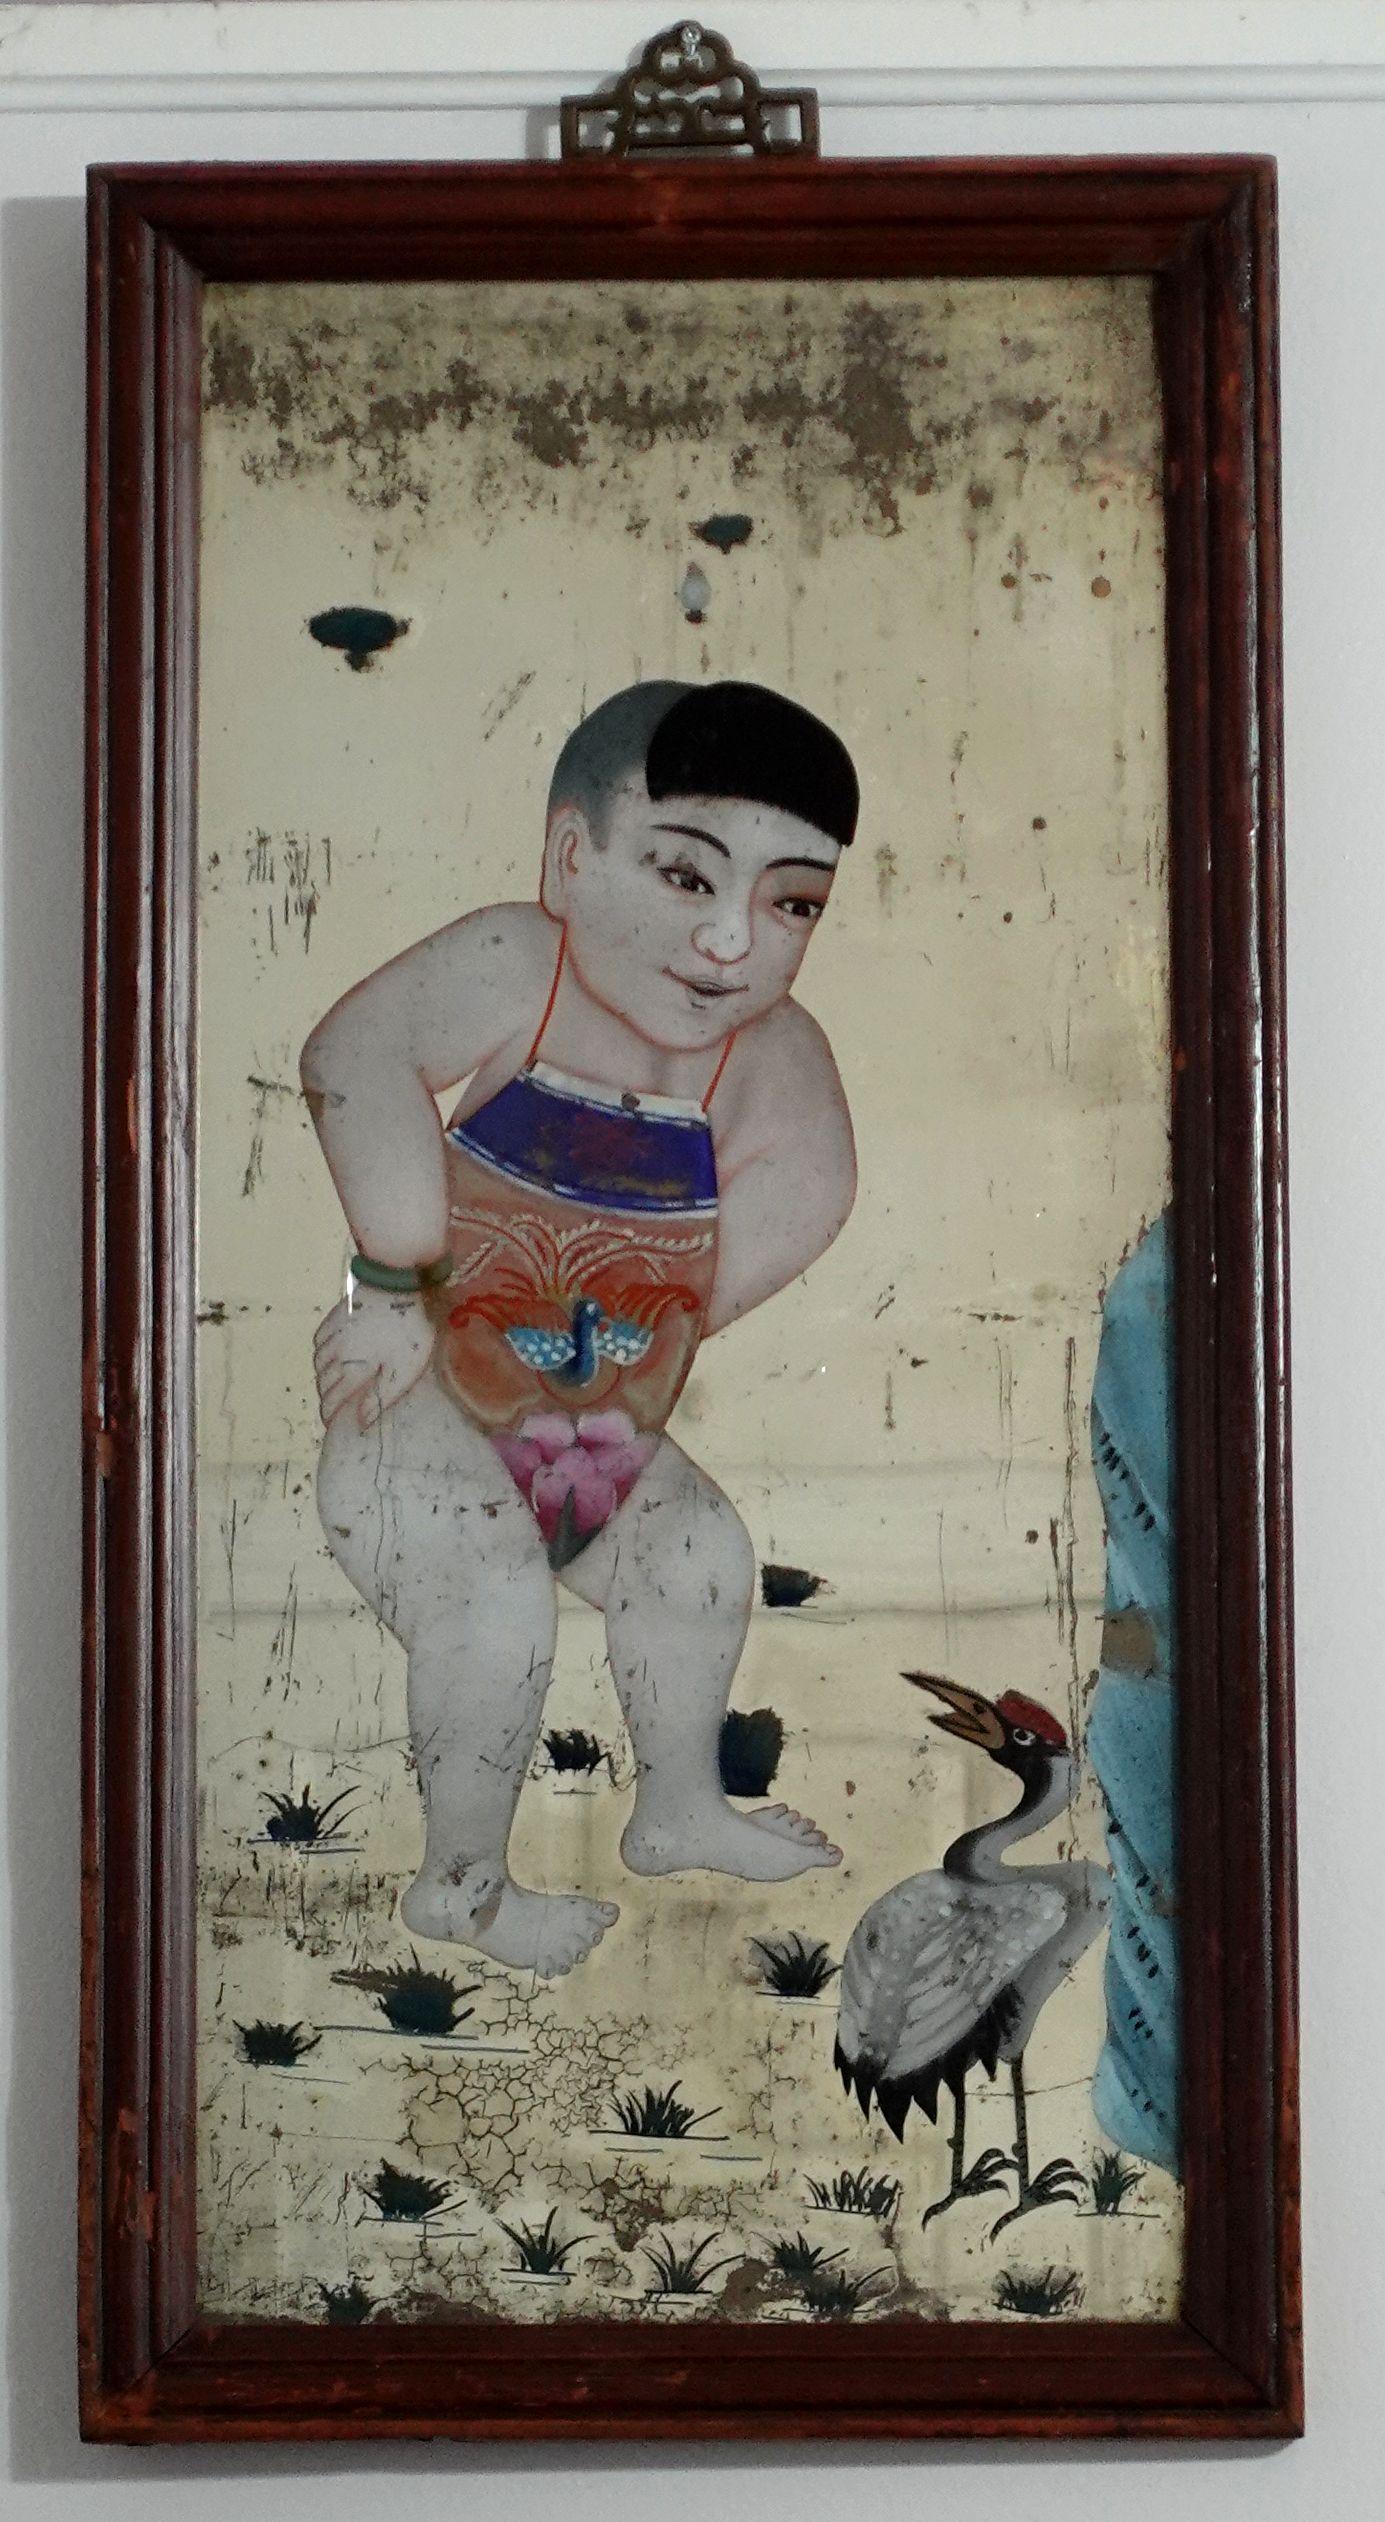 Une grande et charmante peinture inversée d'exportation chinoise du XIXe siècle sur le miroir, représentant un garçon et une grue dans un jardin. 

Les tableaux en verre inversé sont devenus à la mode au 18e siècle. Les panneaux de verre étaient